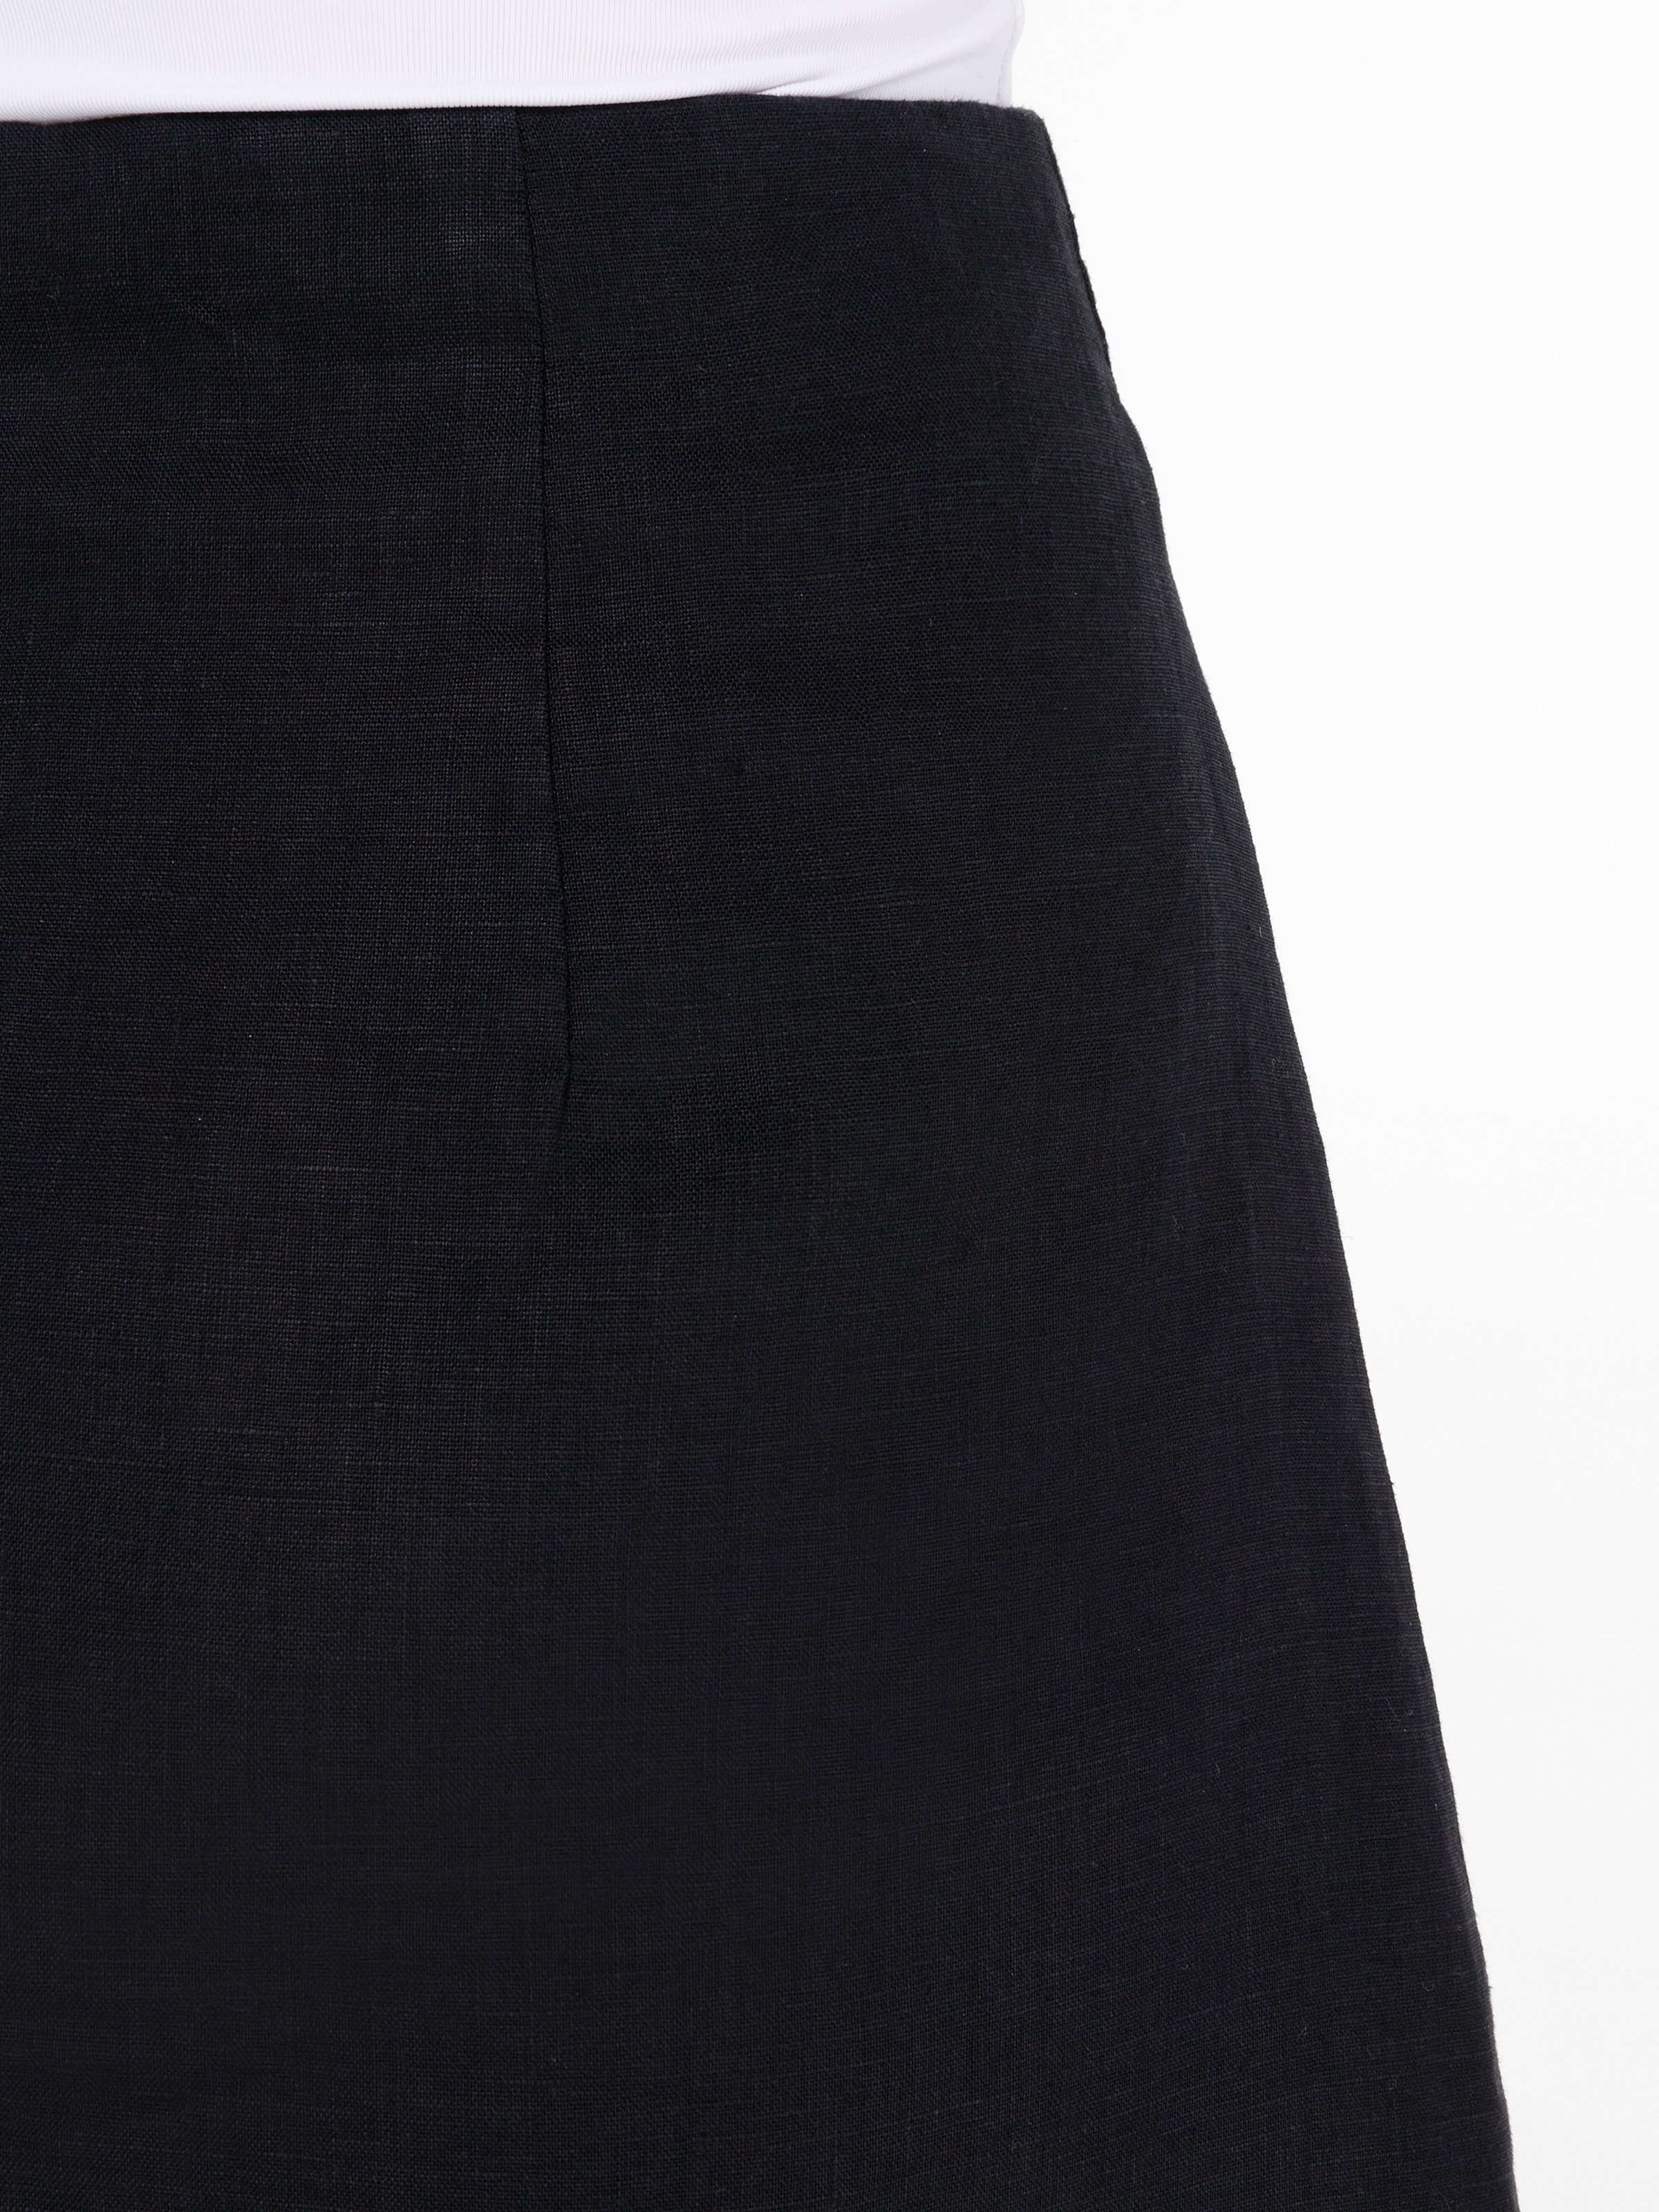 Afișați detalii pentru Fusta De Dama Negru Mini skirt 